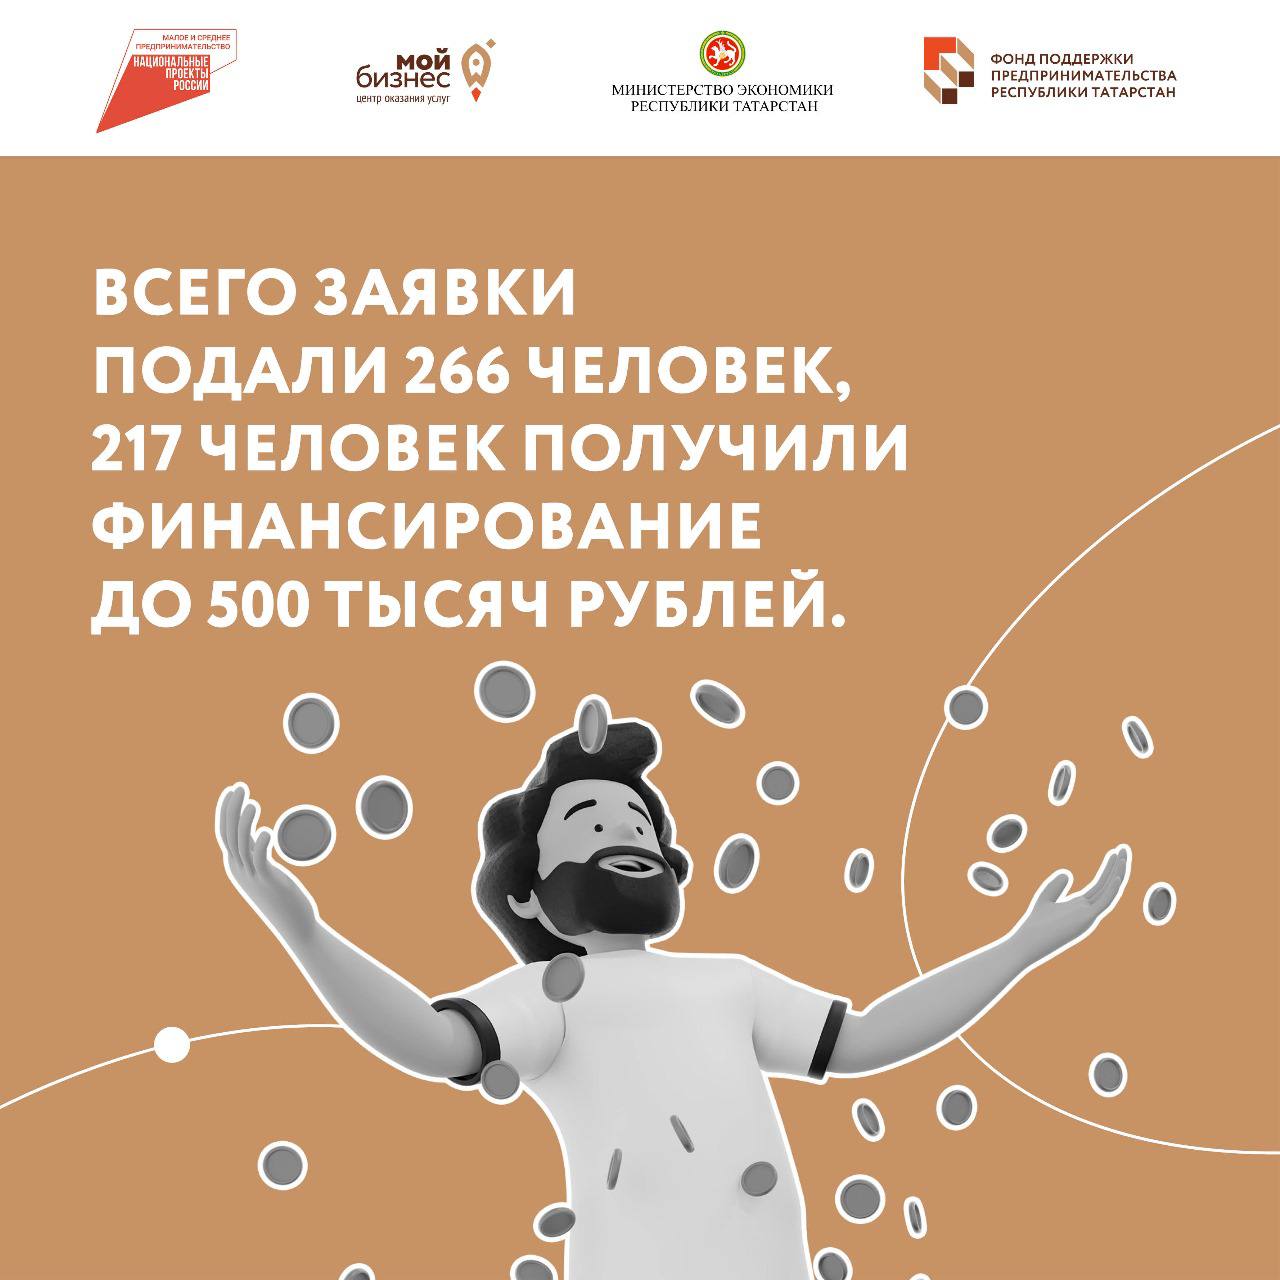 217 предпринимателей Татарстана получили гранты в размере до полумиллиона рублей в рамках нацпроекта «Малое и среднее предпринимательство».